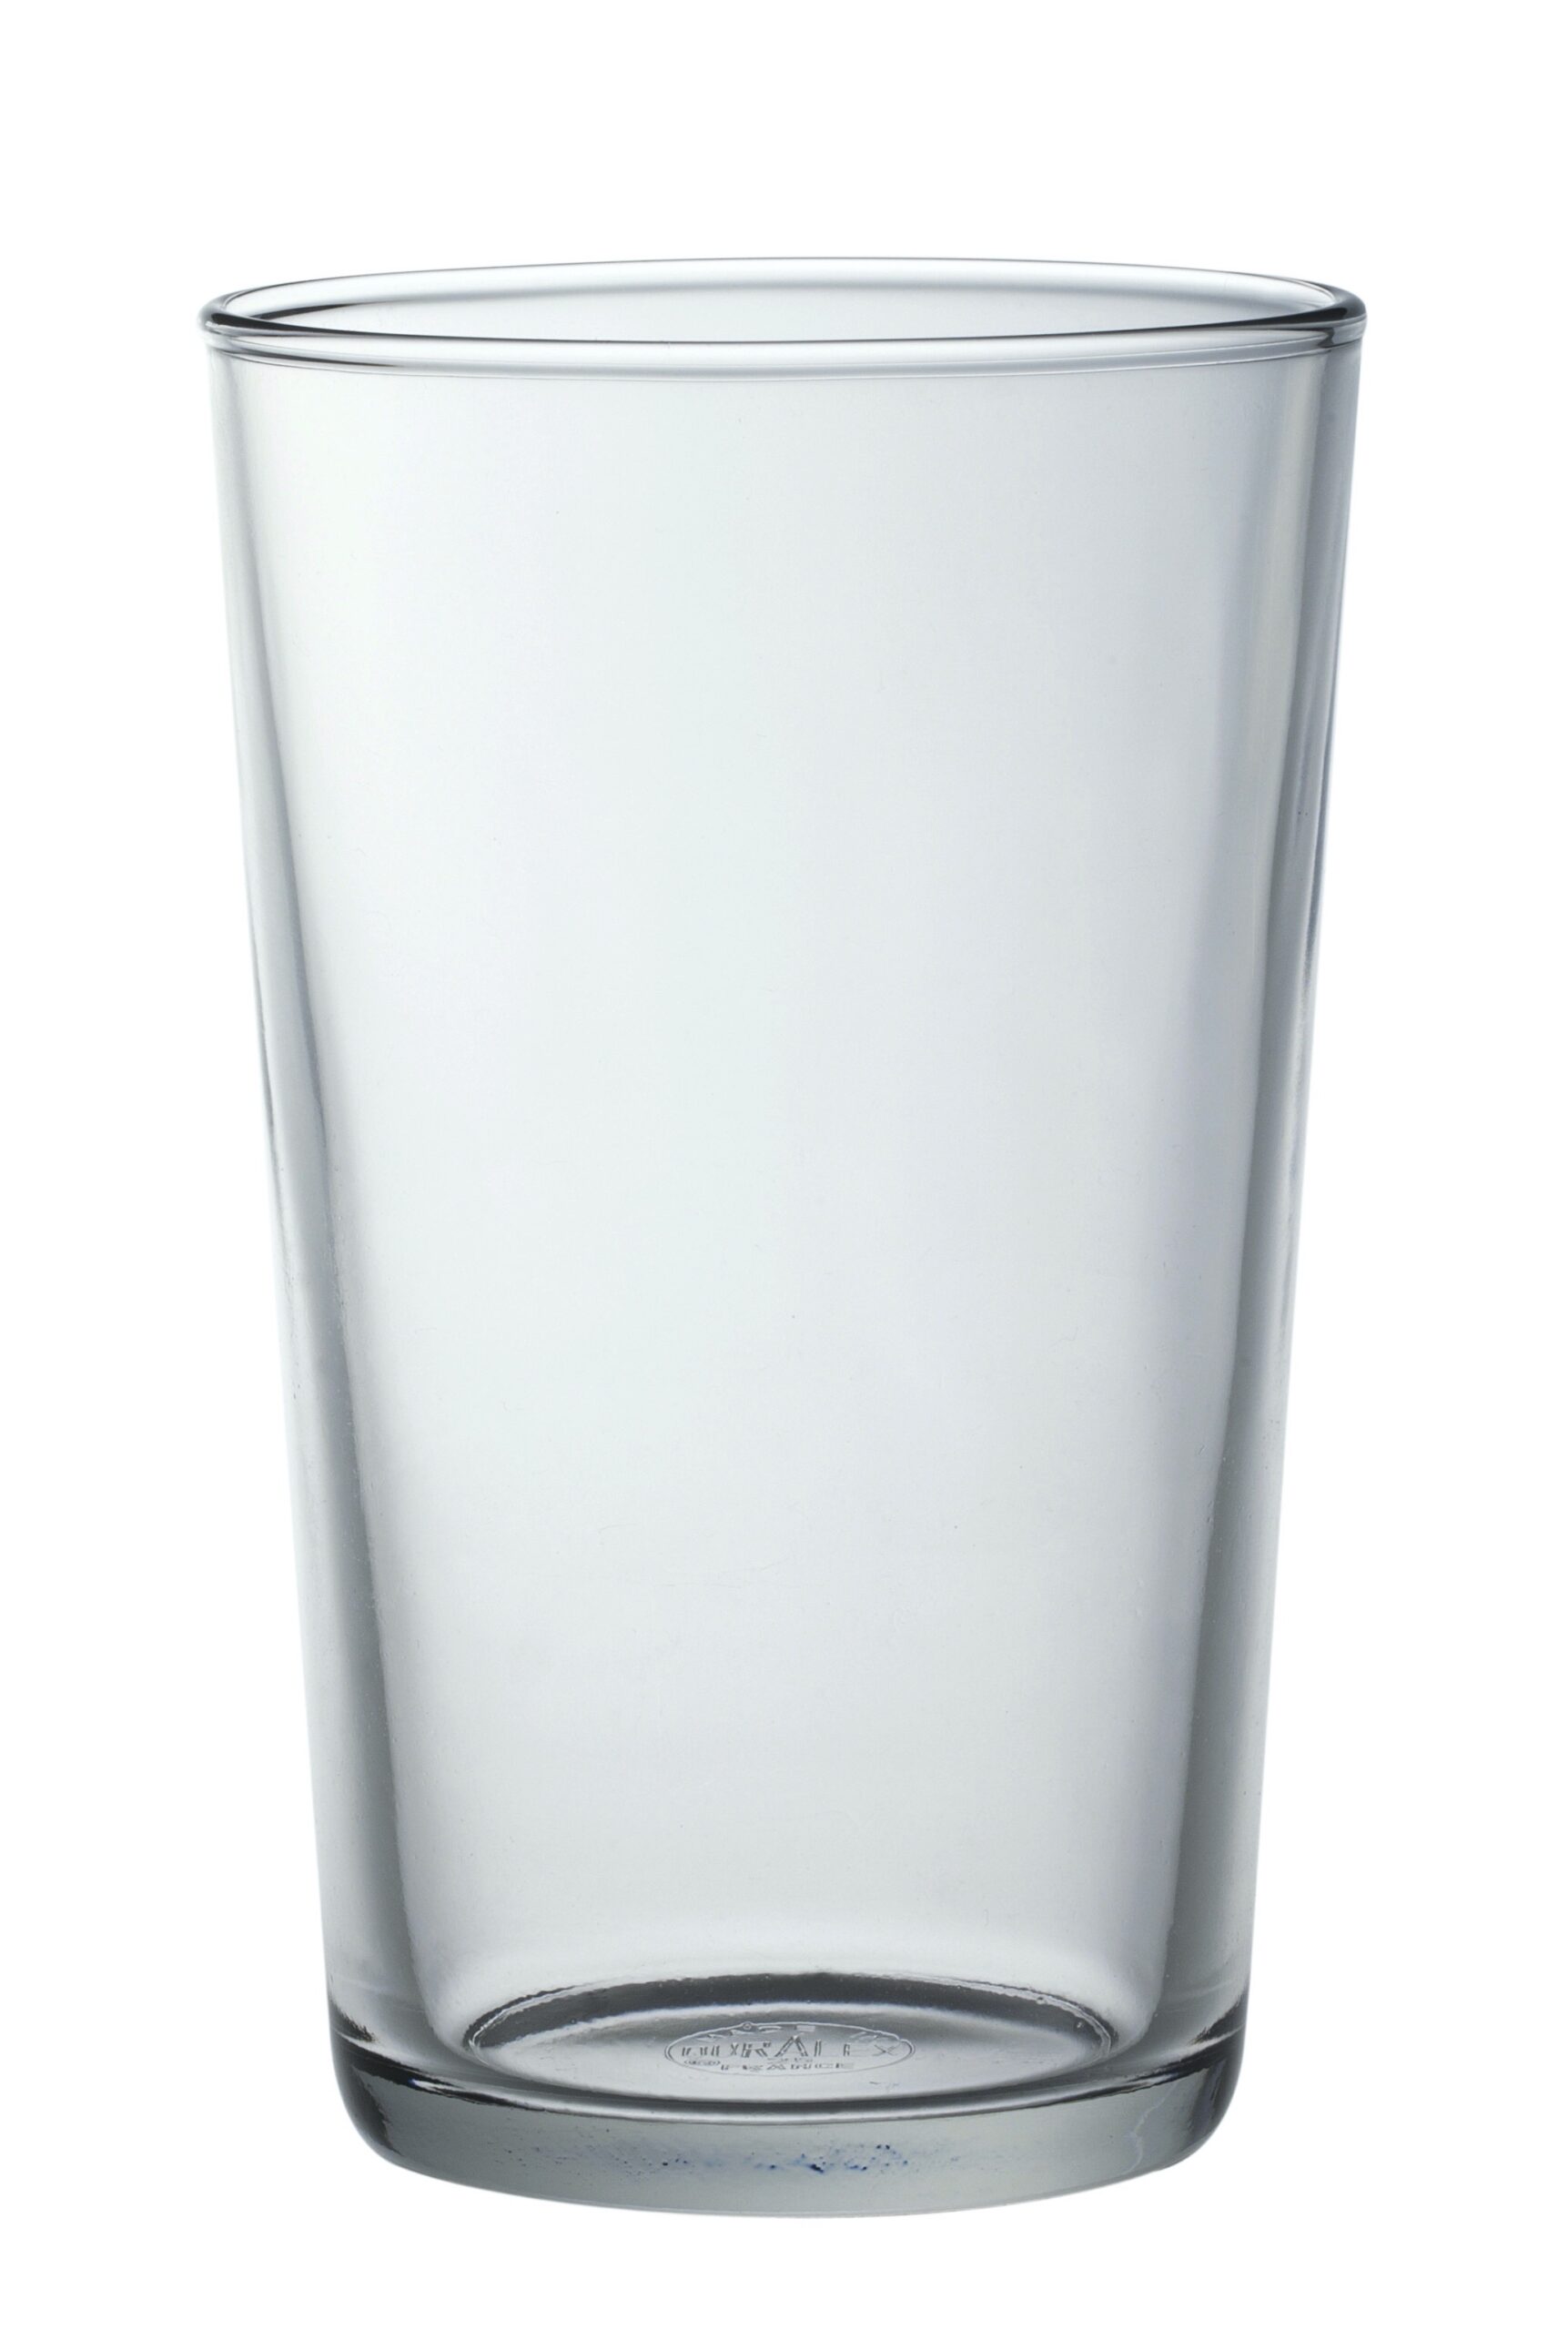 Duralex Chope Unie Tumbler, Trinkglas, 560ml, mit Füllstrich bei 0.4l, Glas gehärtet, transparent, 24 Stück